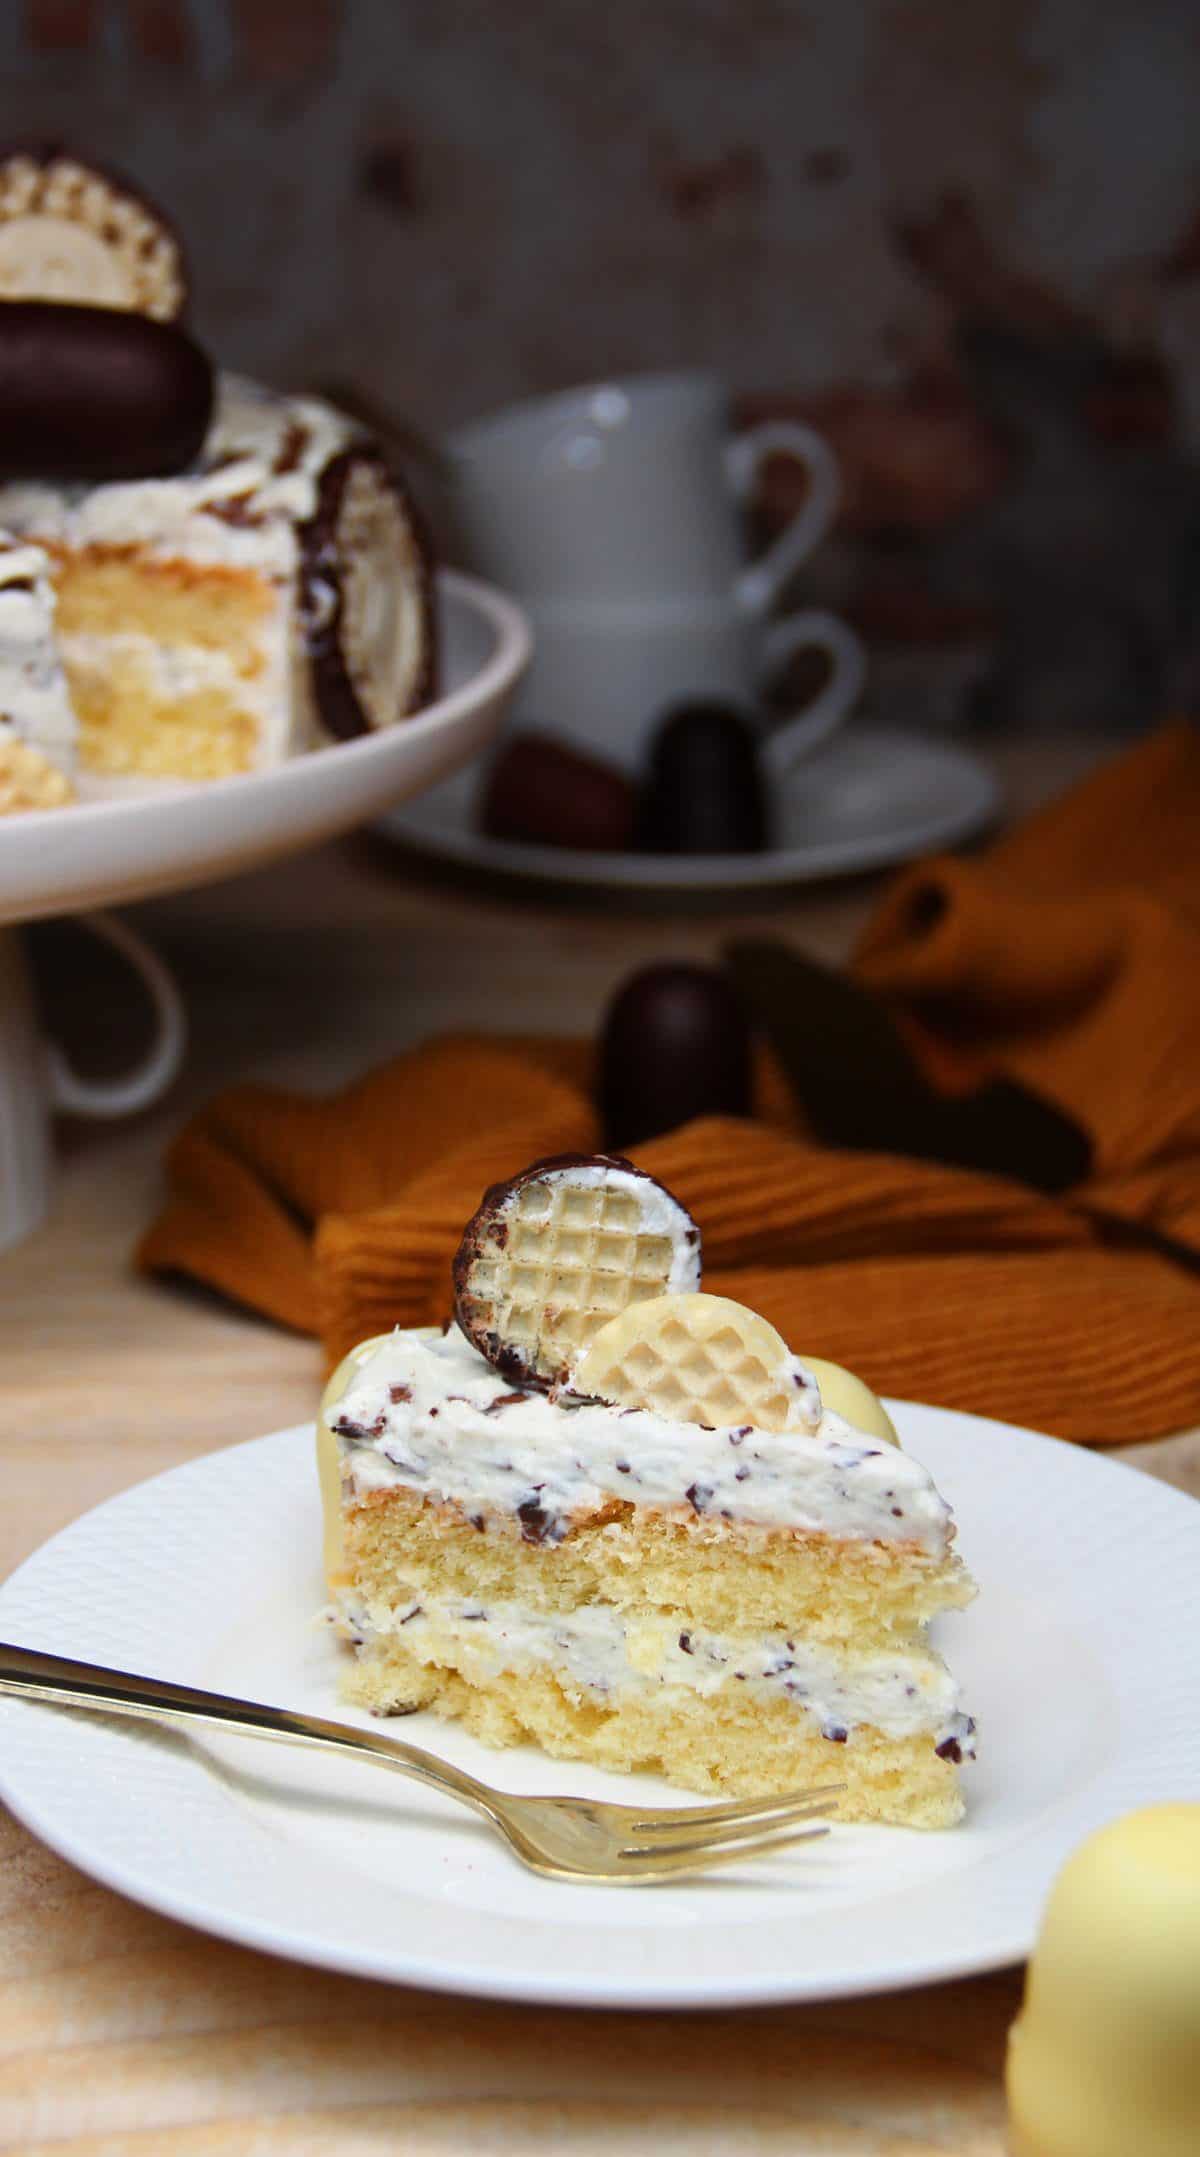 Dickmanns Torte mit dreierlei Schoko-Drip, Kuchenstück auf einem weißen Teller